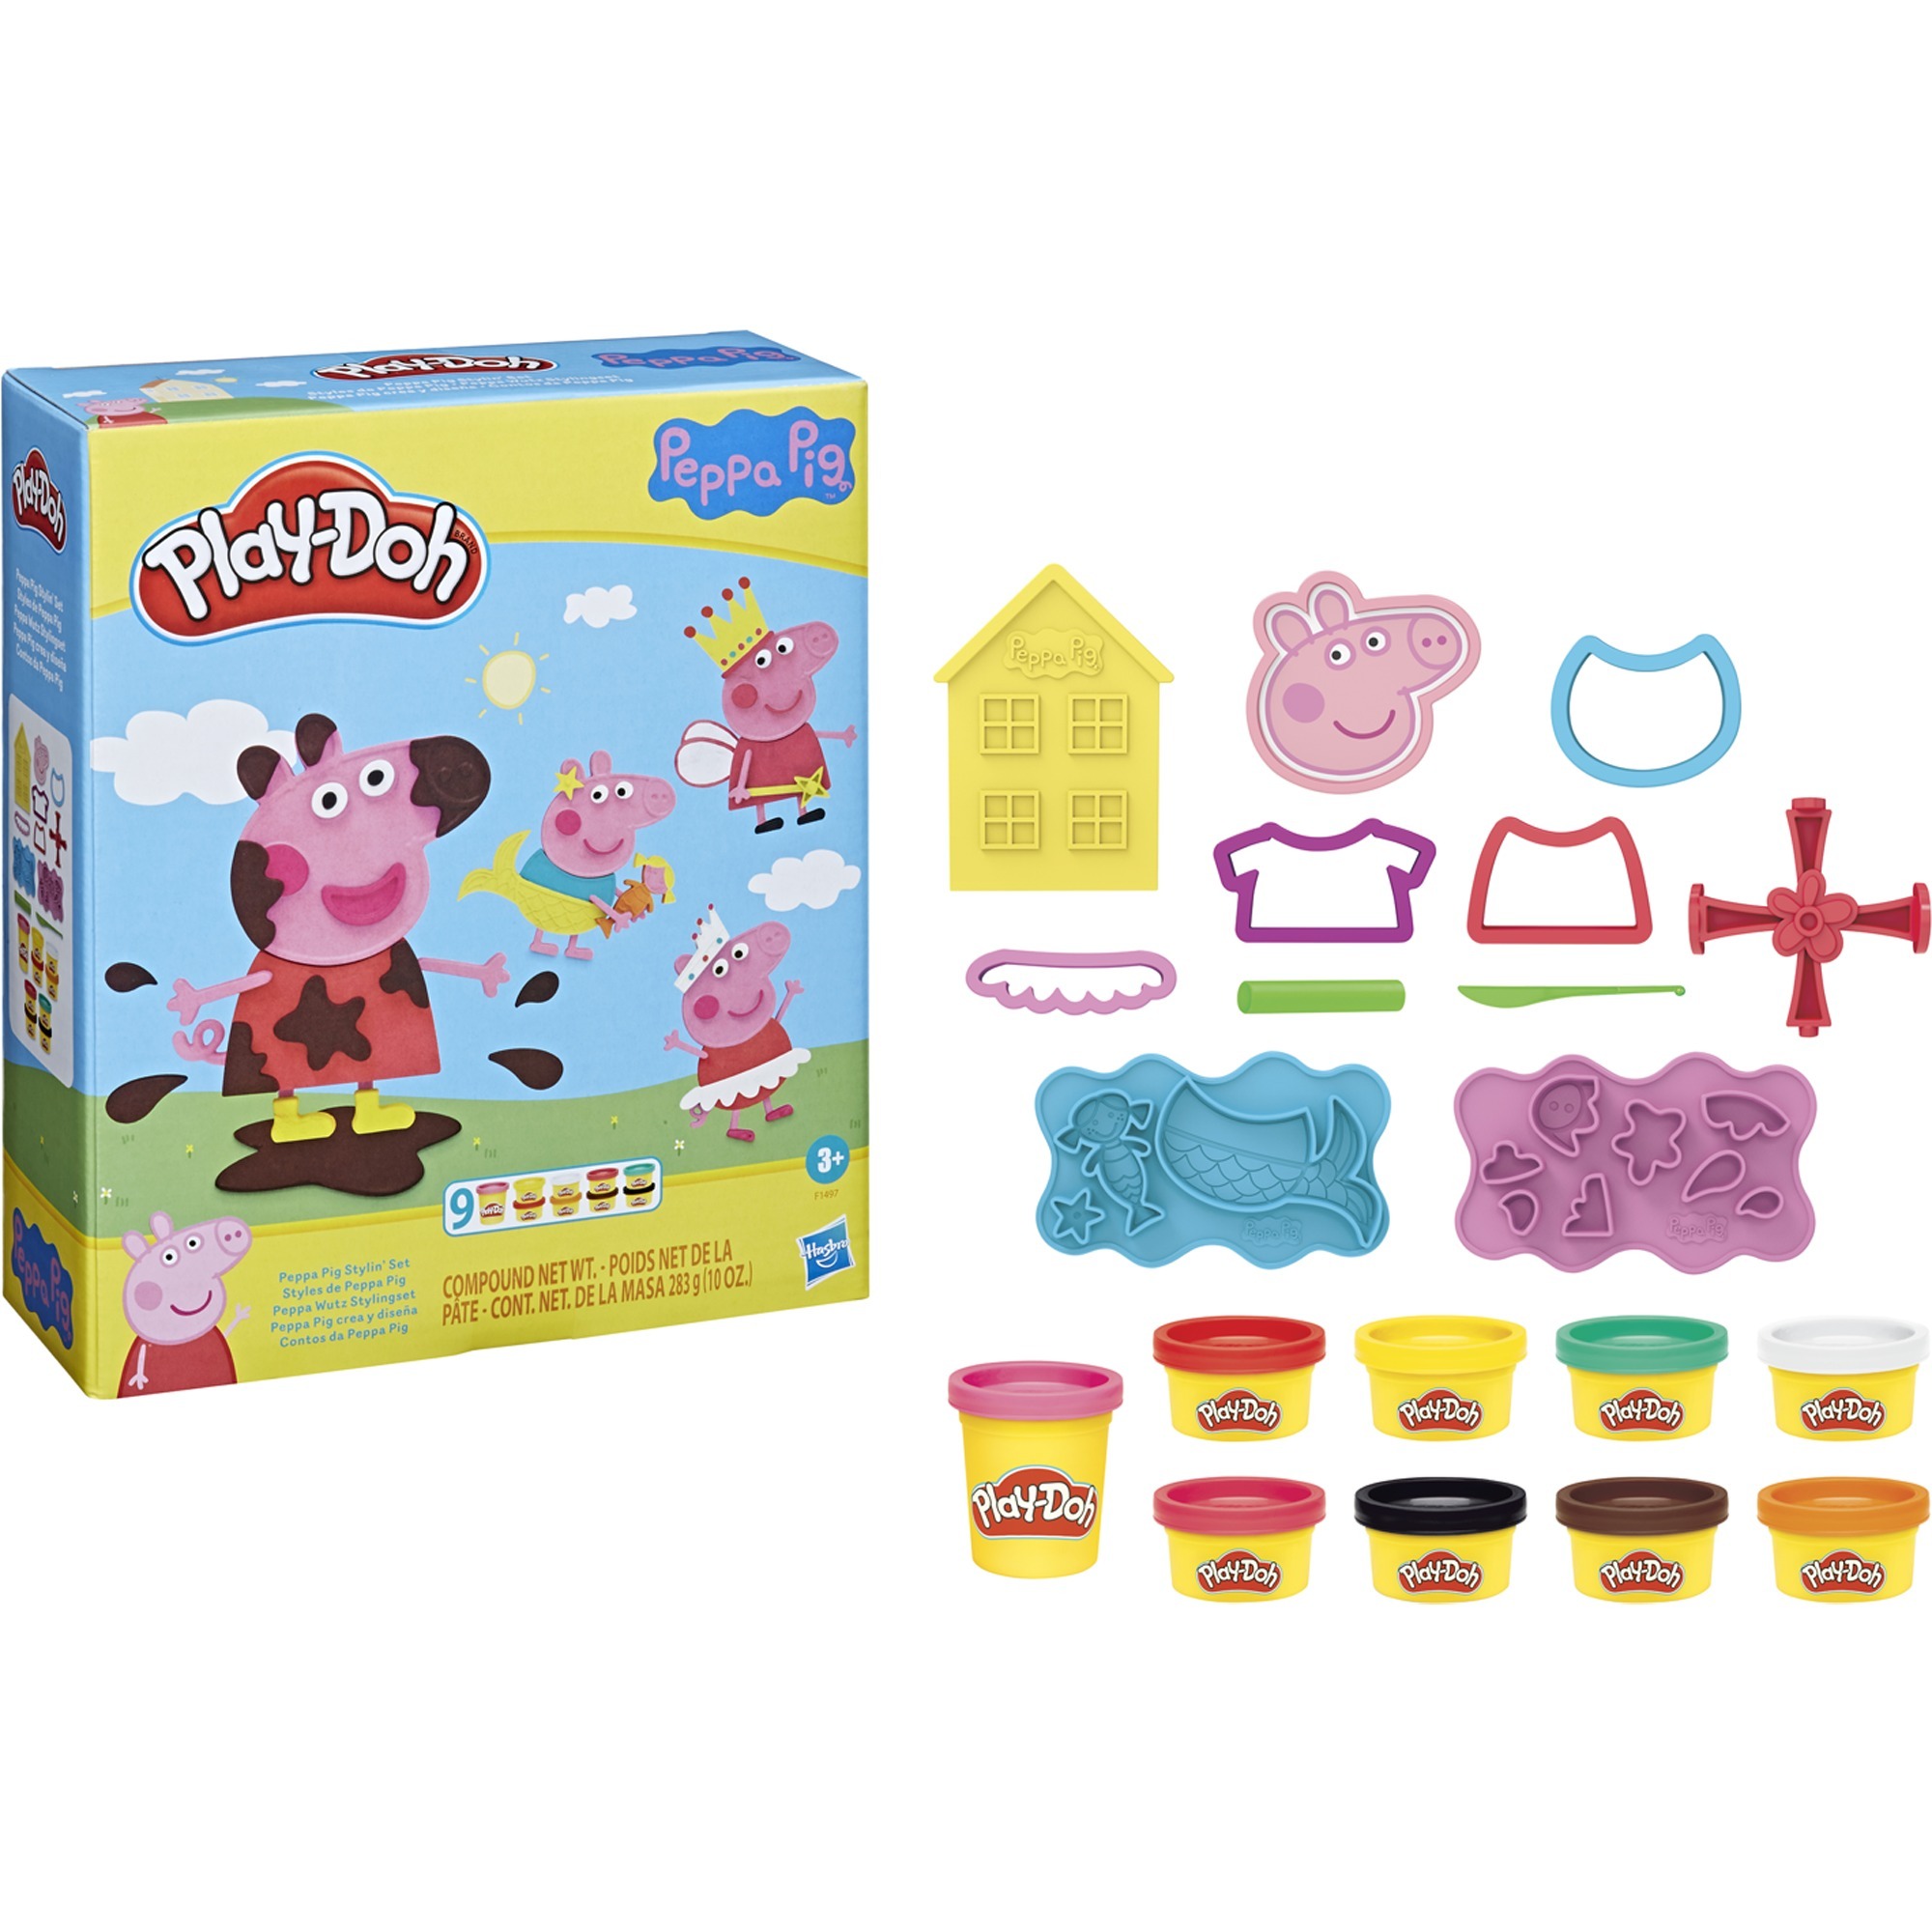 Image of Alternate - Play-Doh Peppa Wutz Stylingset, Kneten online einkaufen bei Alternate